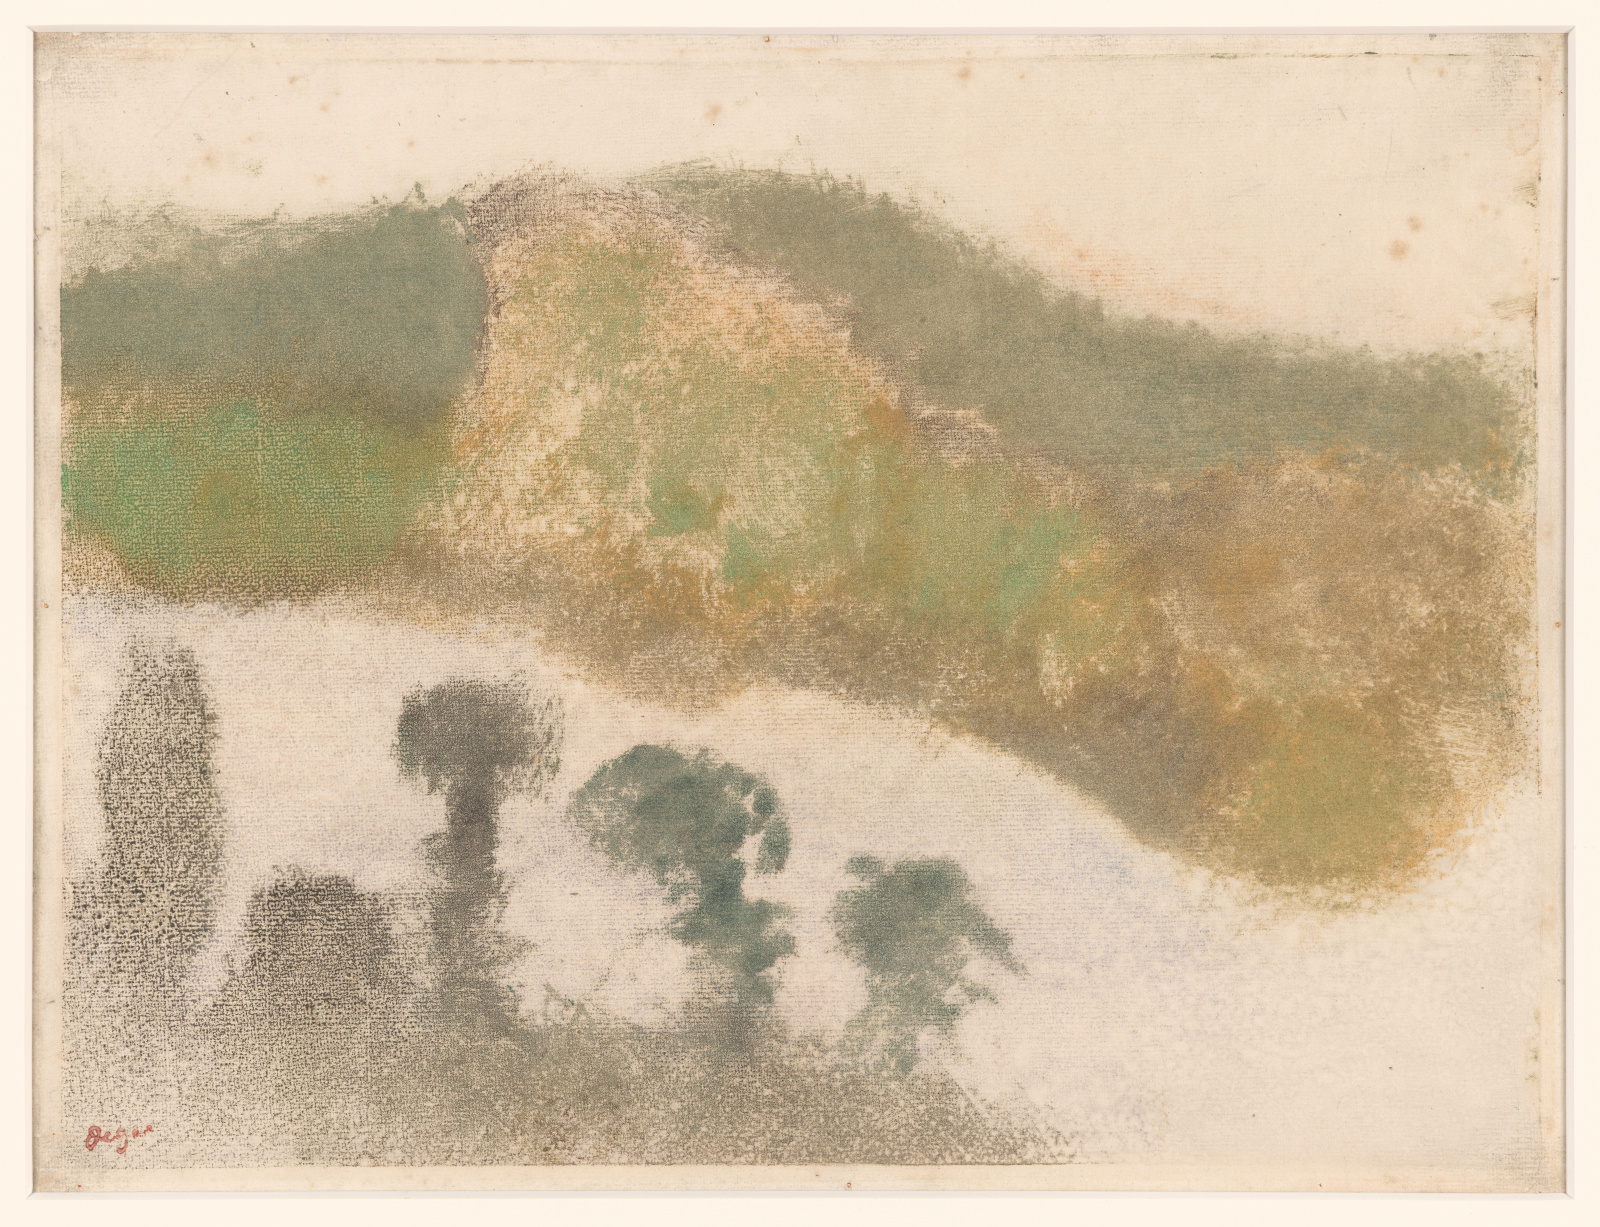 EDGAR DEGAS (1834–1917)
Montagnes et vallon (Berge und Tal), 1890
39 x 49 cm
Monotypie in Öl, mit Pastellkreide überarbeitet
Privatsammlung Basel